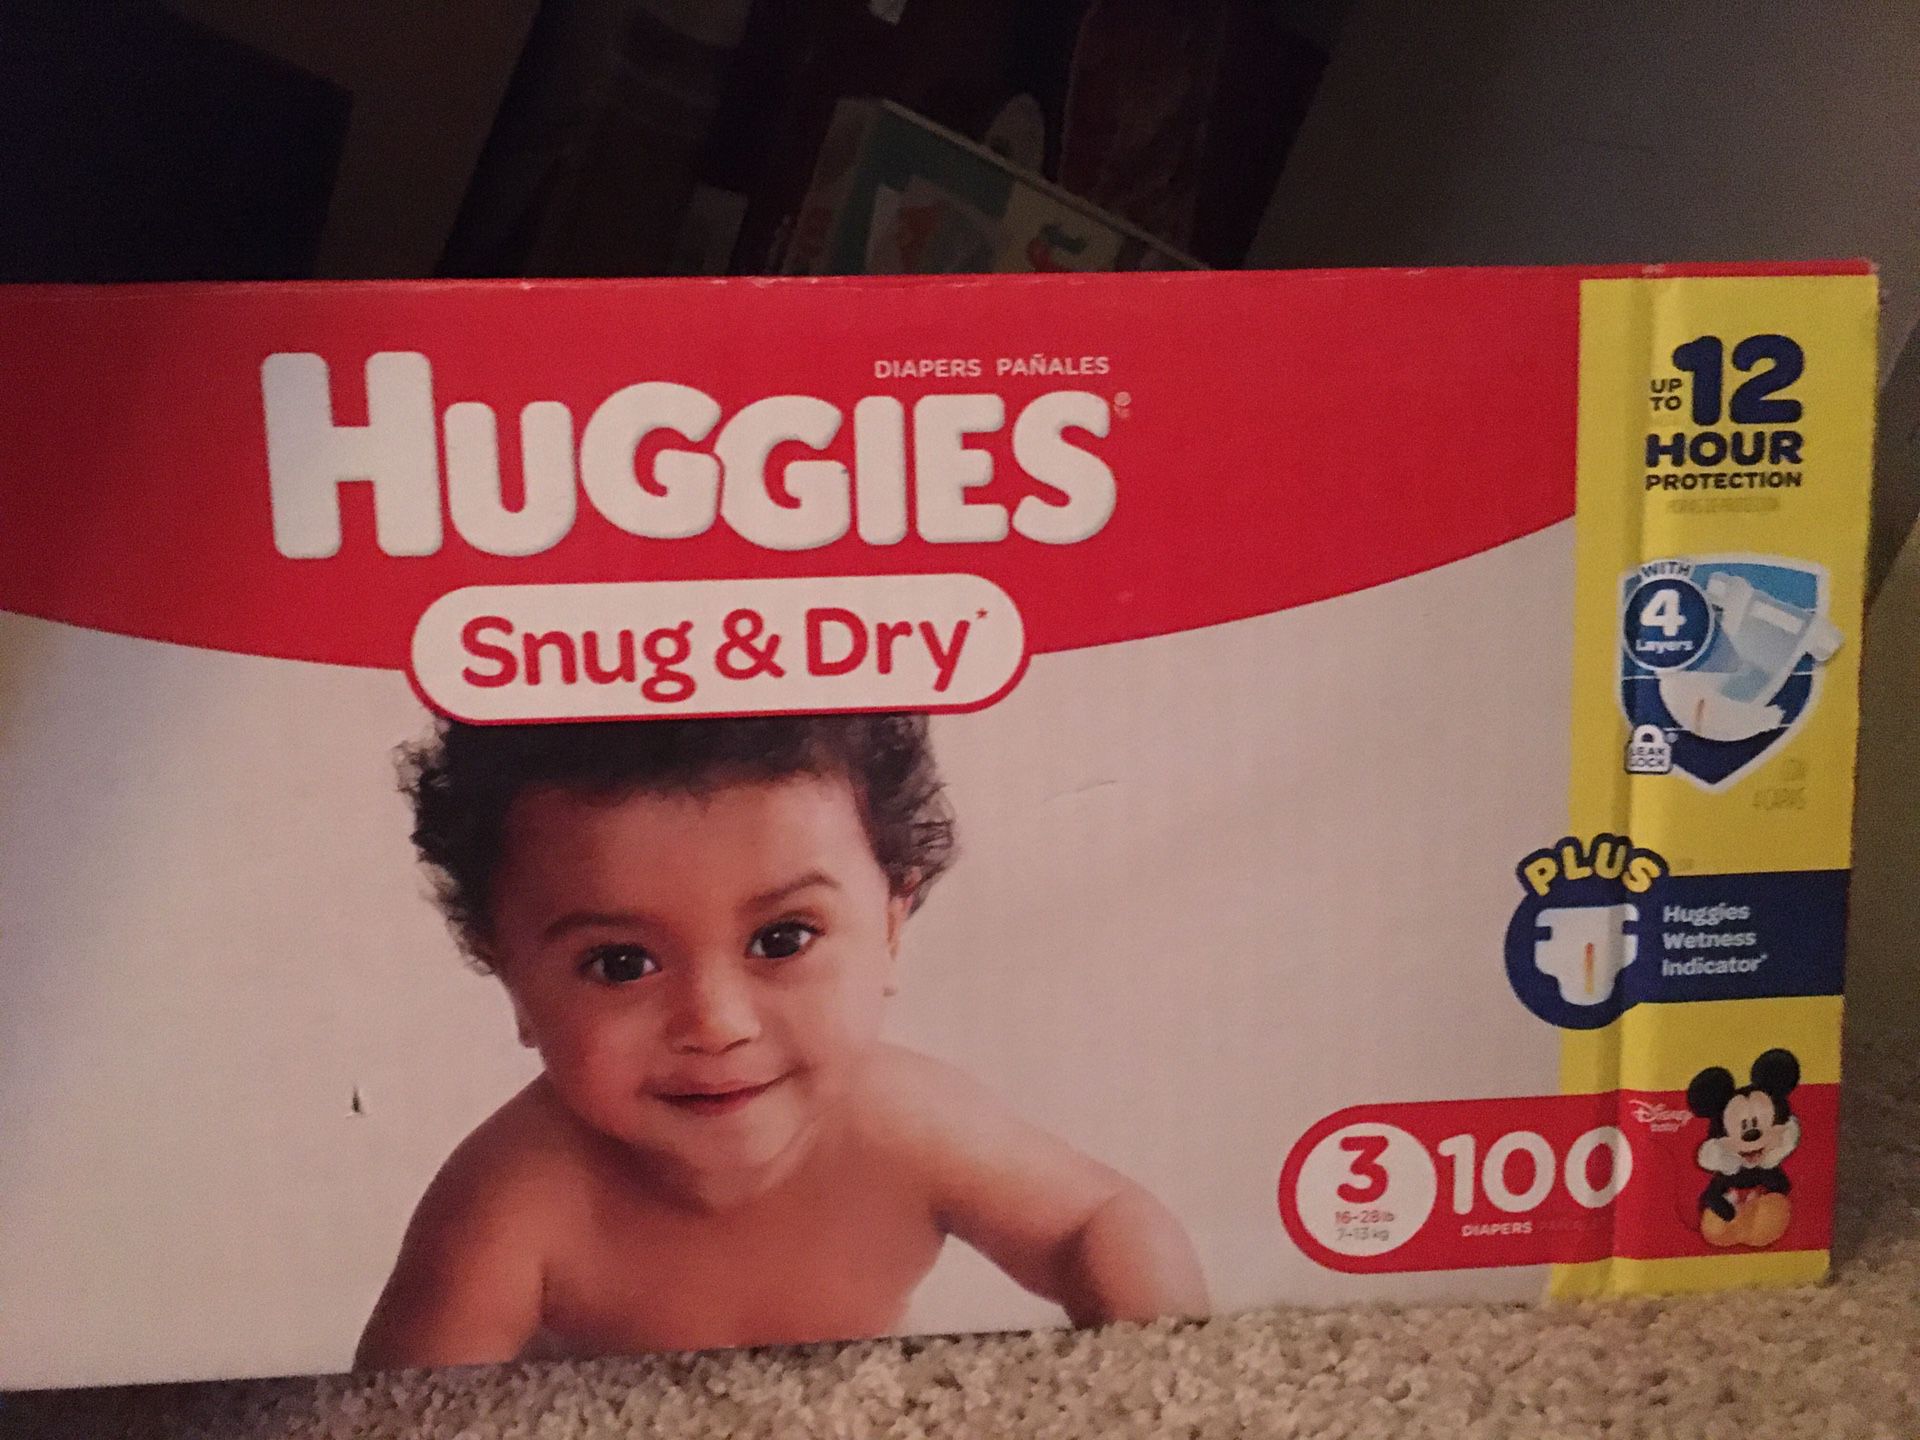 New Huggies diapers